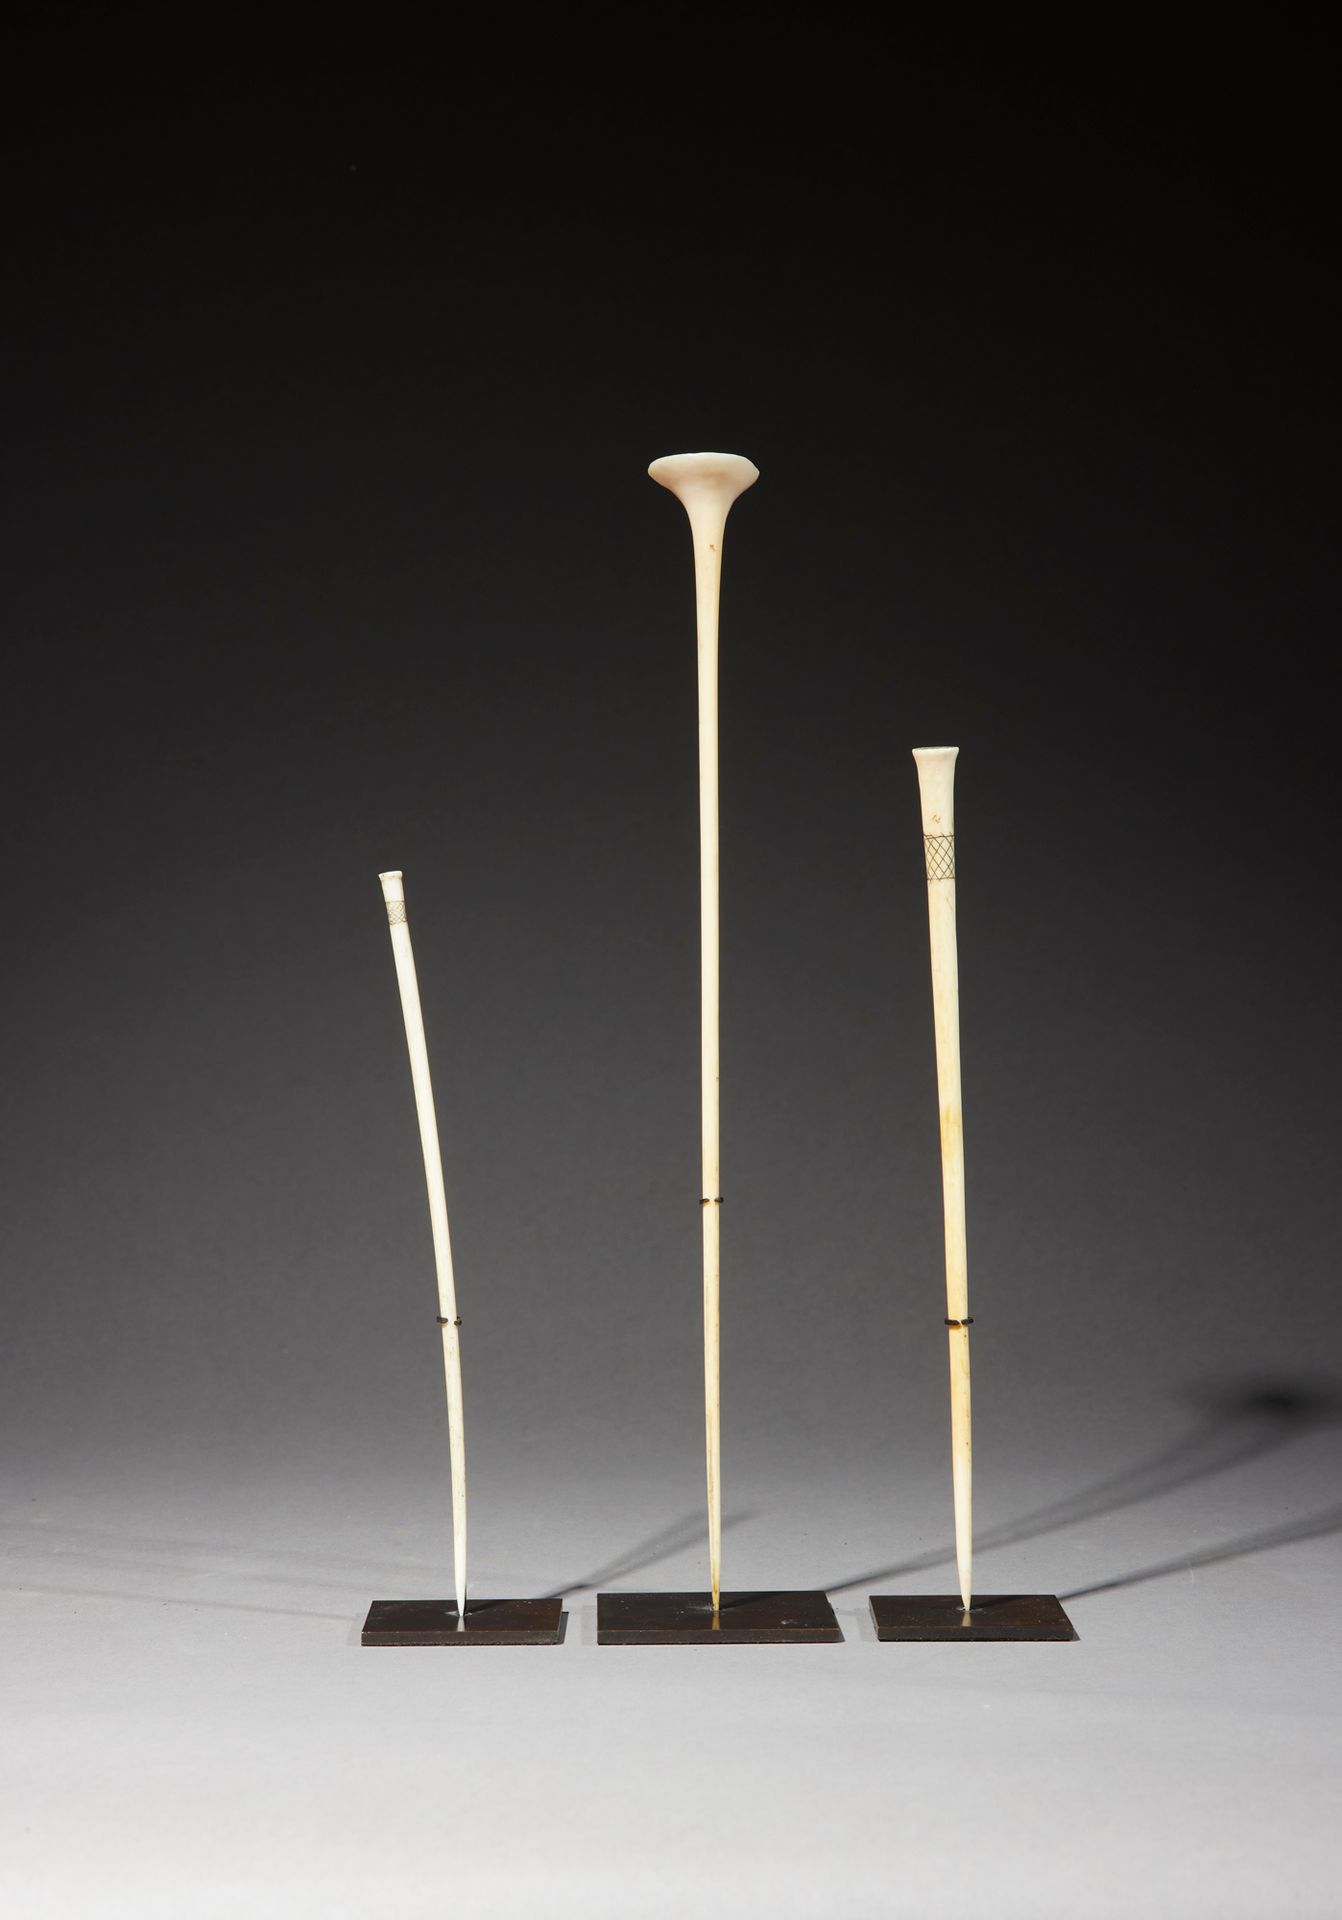 Null 三个Mangbetu发夹

刚果 DRC

象牙色

H.19.5至30厘米



一套三个由一块象牙雕刻而成的精美别针，两个在顶部刻有几何图案，第三&hellip;